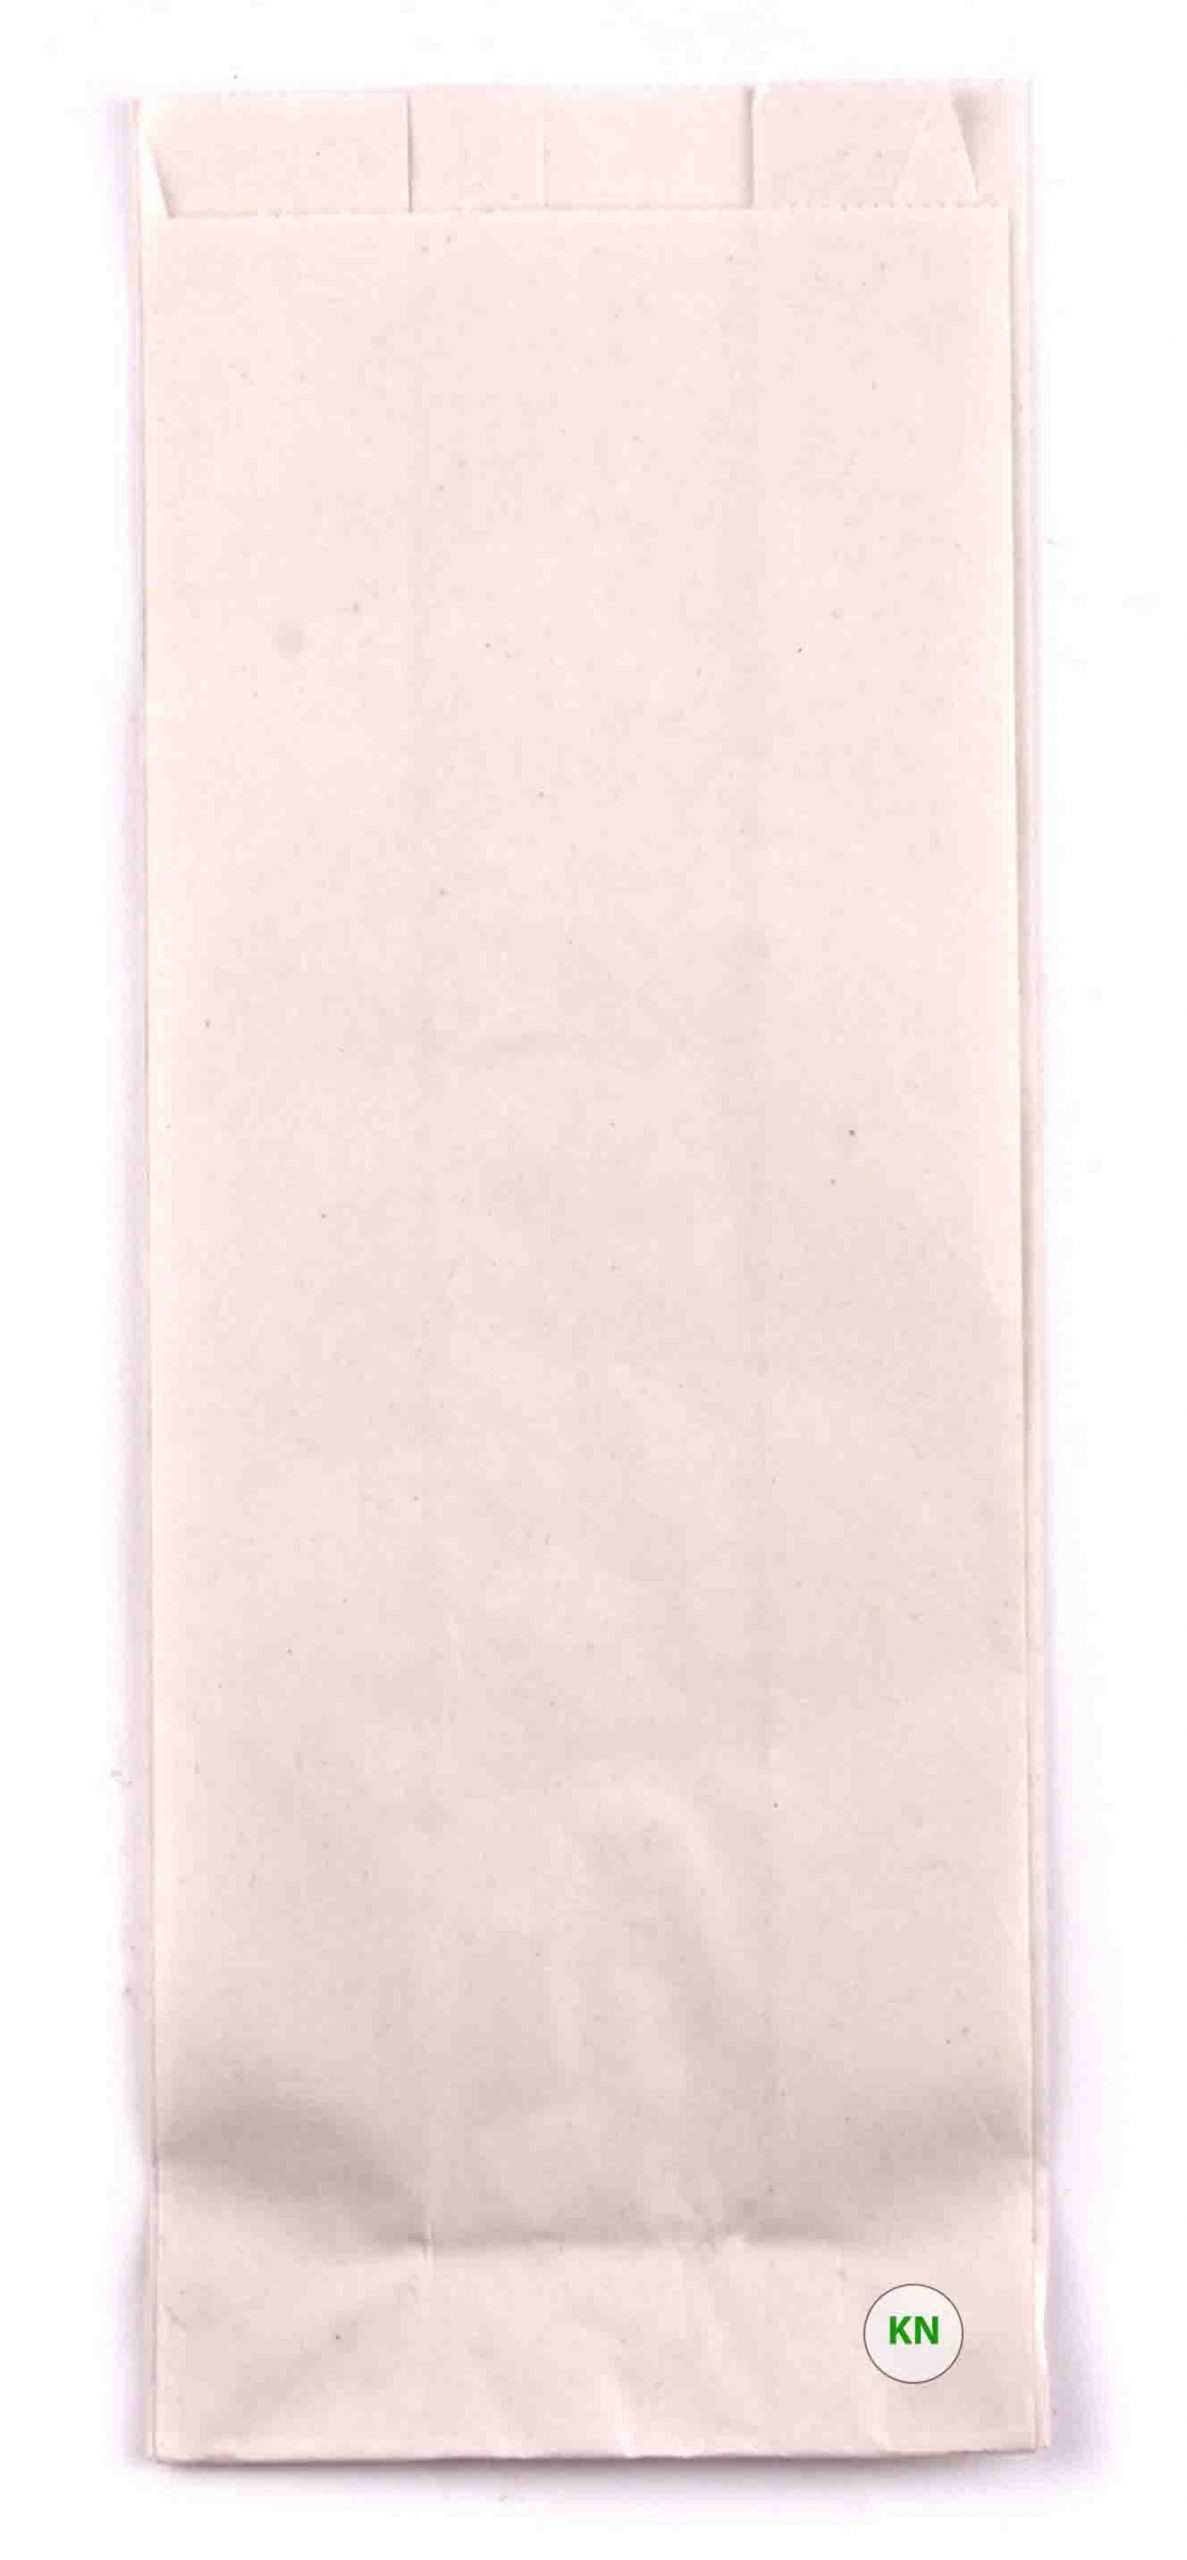 Пакет бумажный белый для шаурмы, 280 х 100 х 70 мм